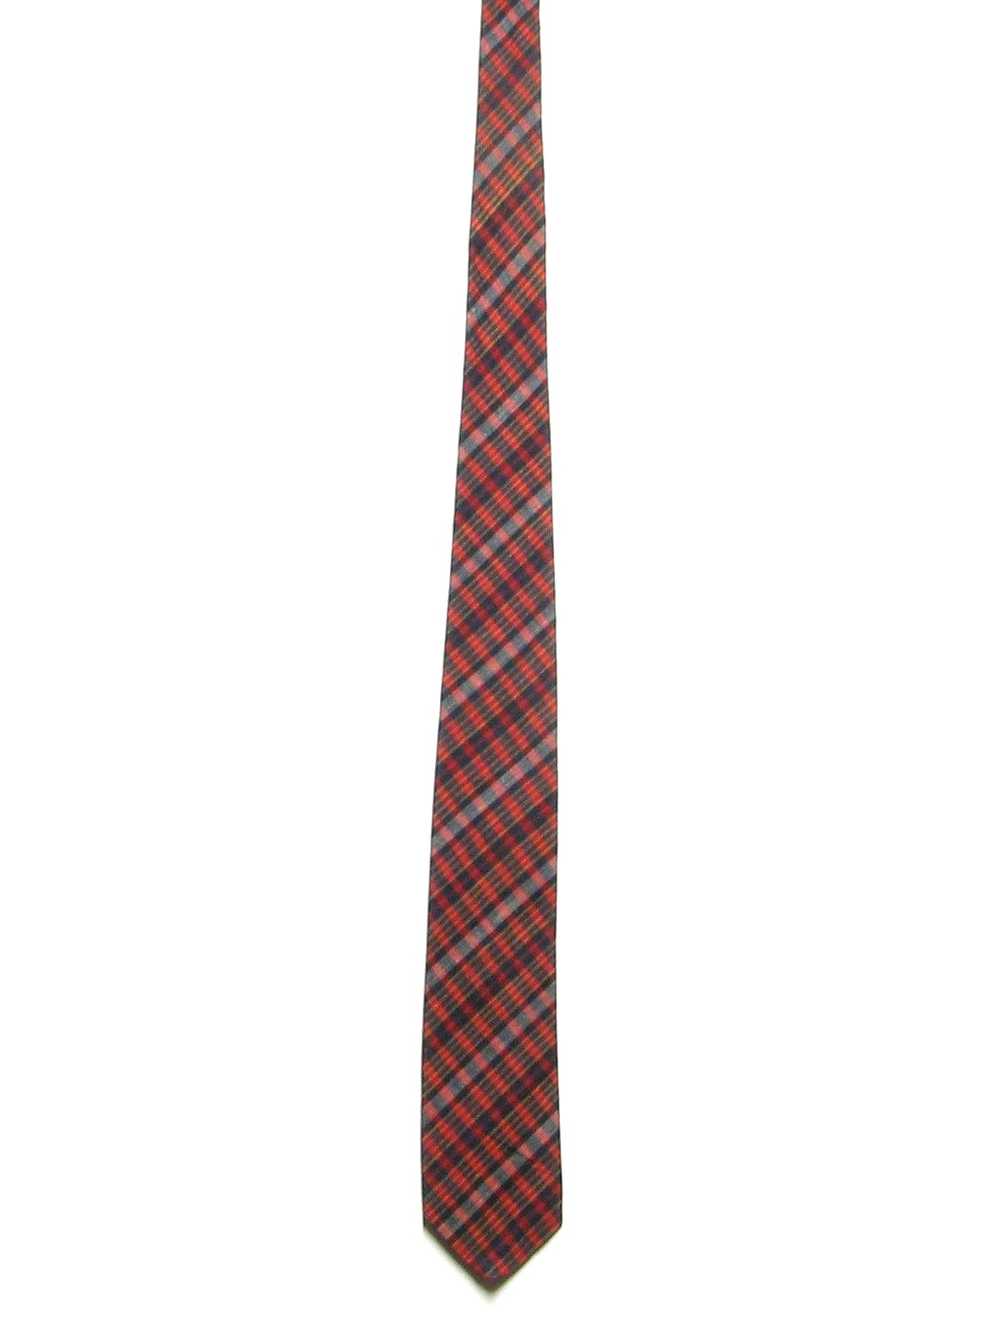 1960's Mens Skinny Mod Rockabilly Necktie - image 1